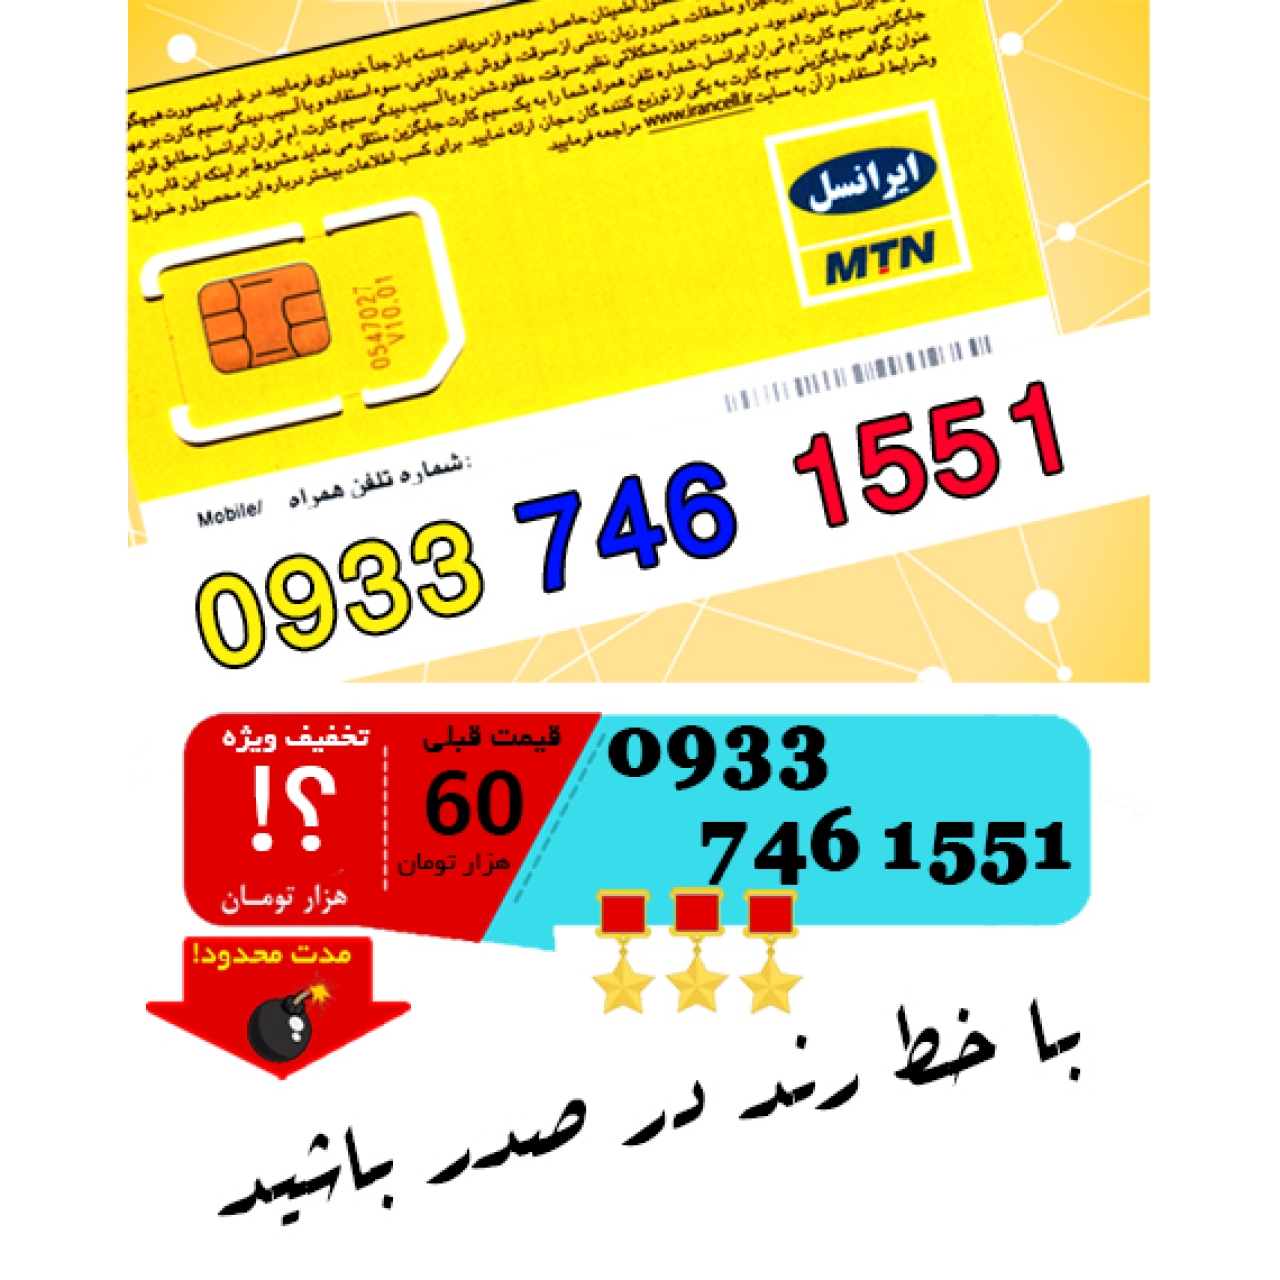 سیم کارت اعتباری ایرانسل 09337461551